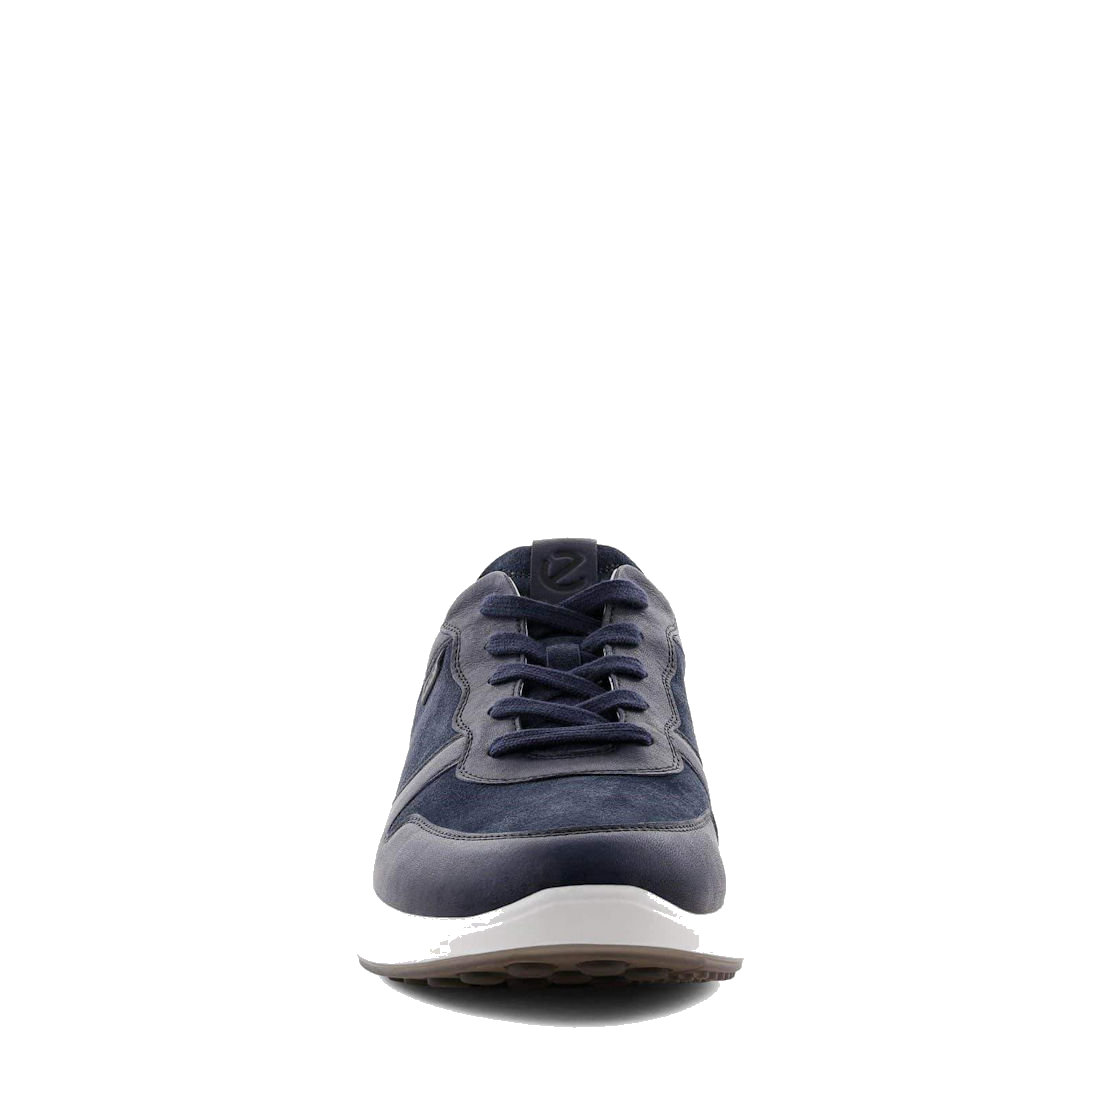 mens ECCO Soft 7- Navy Blue Runner Sneaker